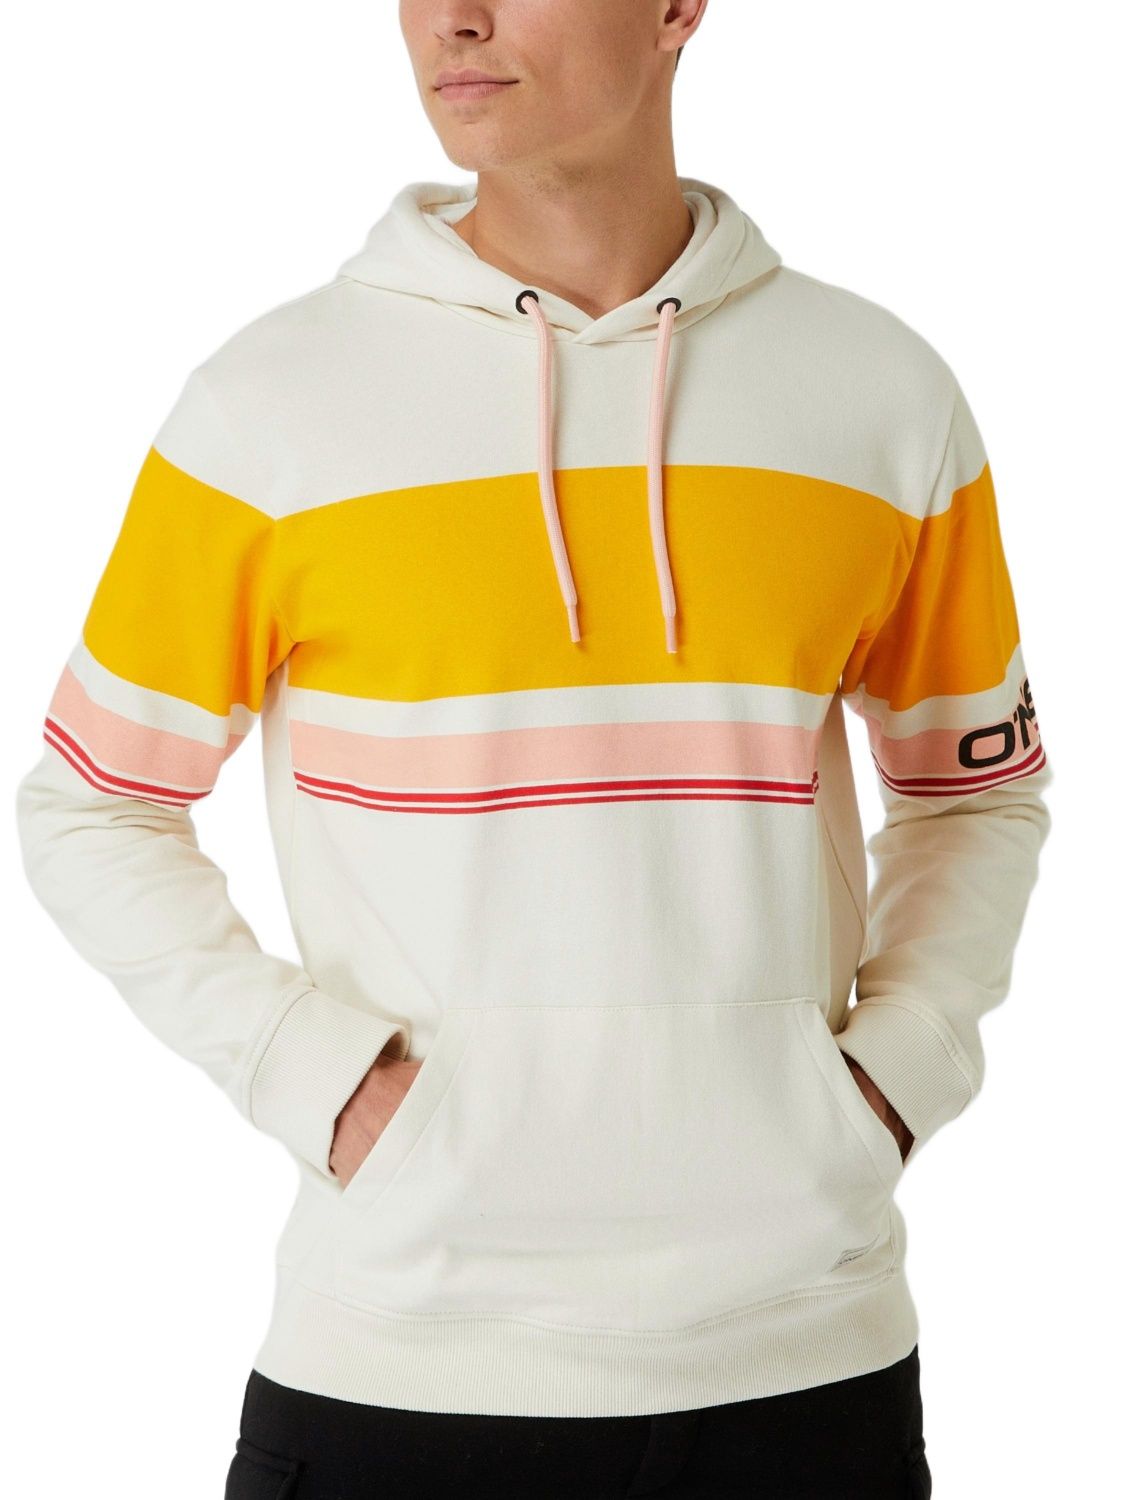 Bluza męska z kapturem – O’Neill Horizon – biało-pomarańczowa (XL)